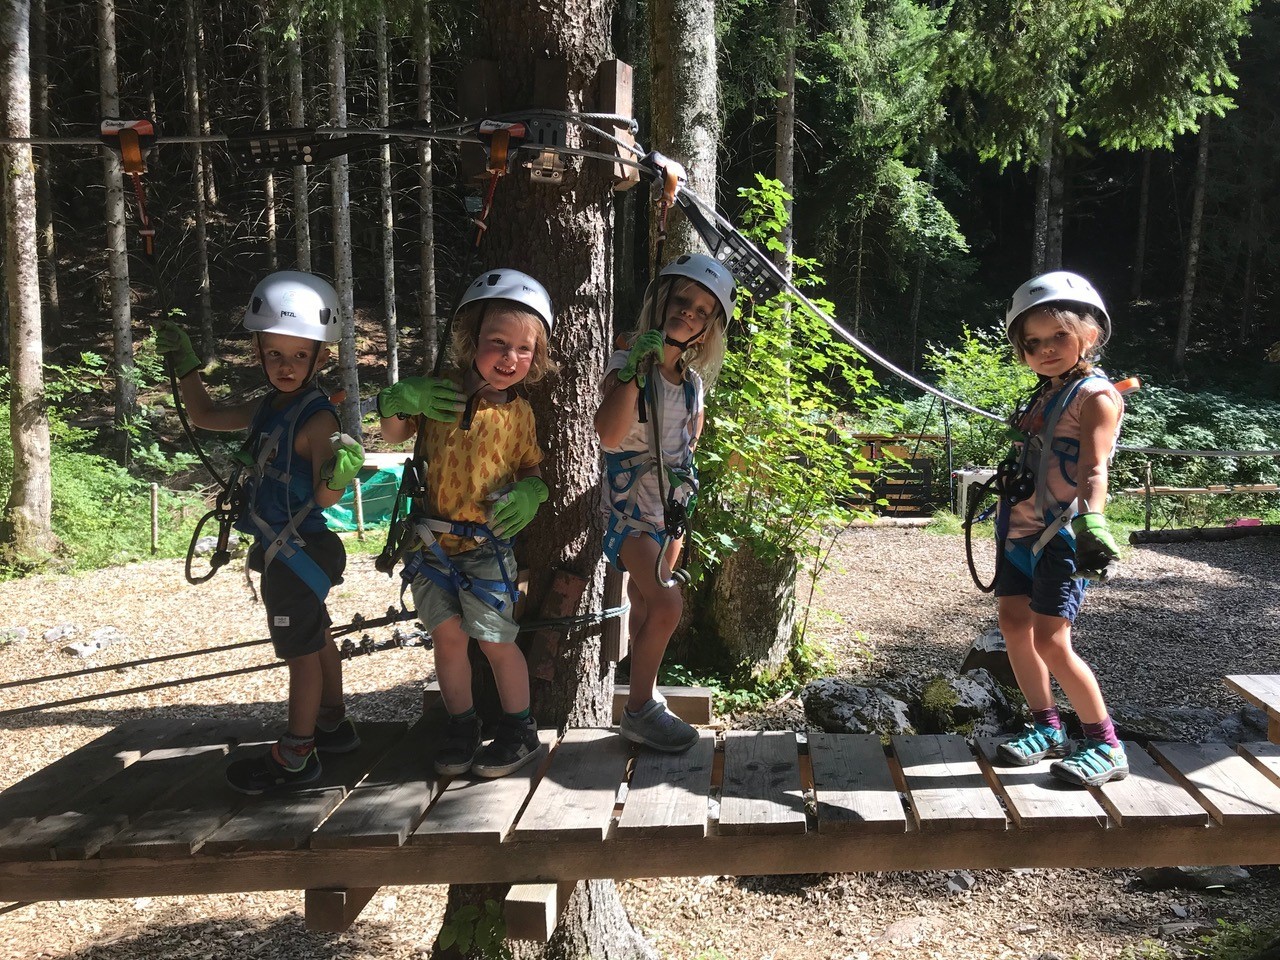 A l'Organic Adventure Park, l'accrobranche est accessible sans limite de poids ou d'âge, ce qui permet de vivre ces moments en famille.